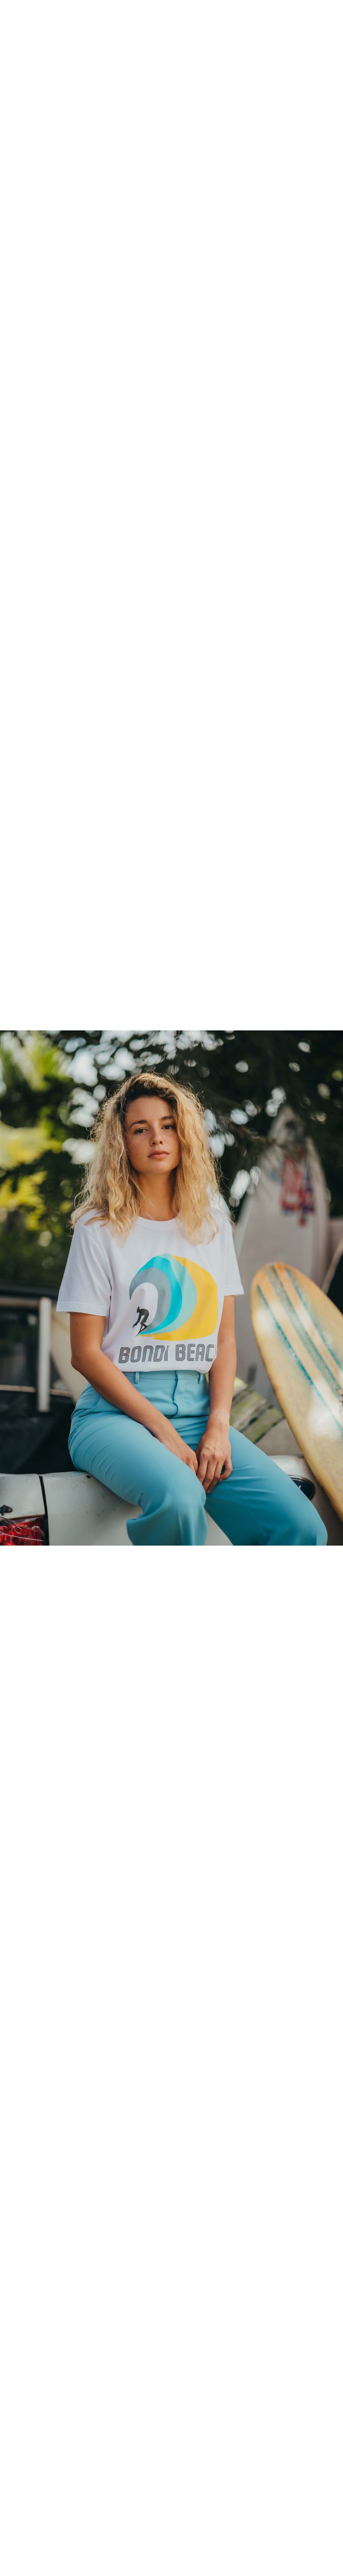 T-shirt Vintage Femme Blanc Bondi Beach